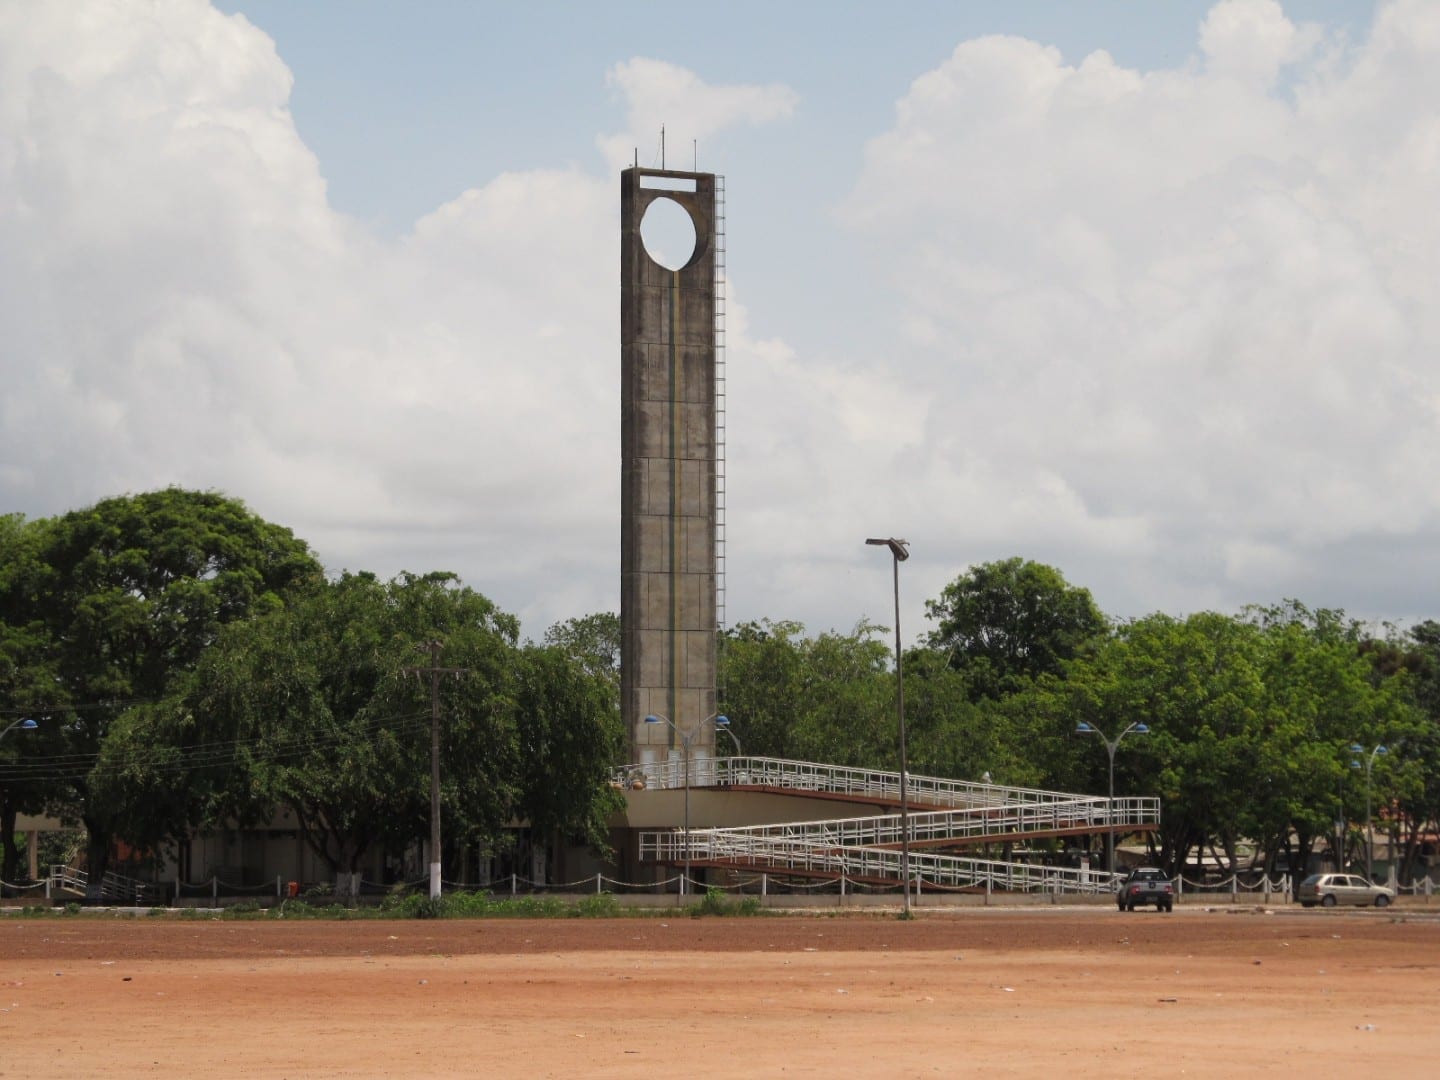 El monumento de la Marca Cero, donde el ecuador pasa por Macapá Macapá Brasil